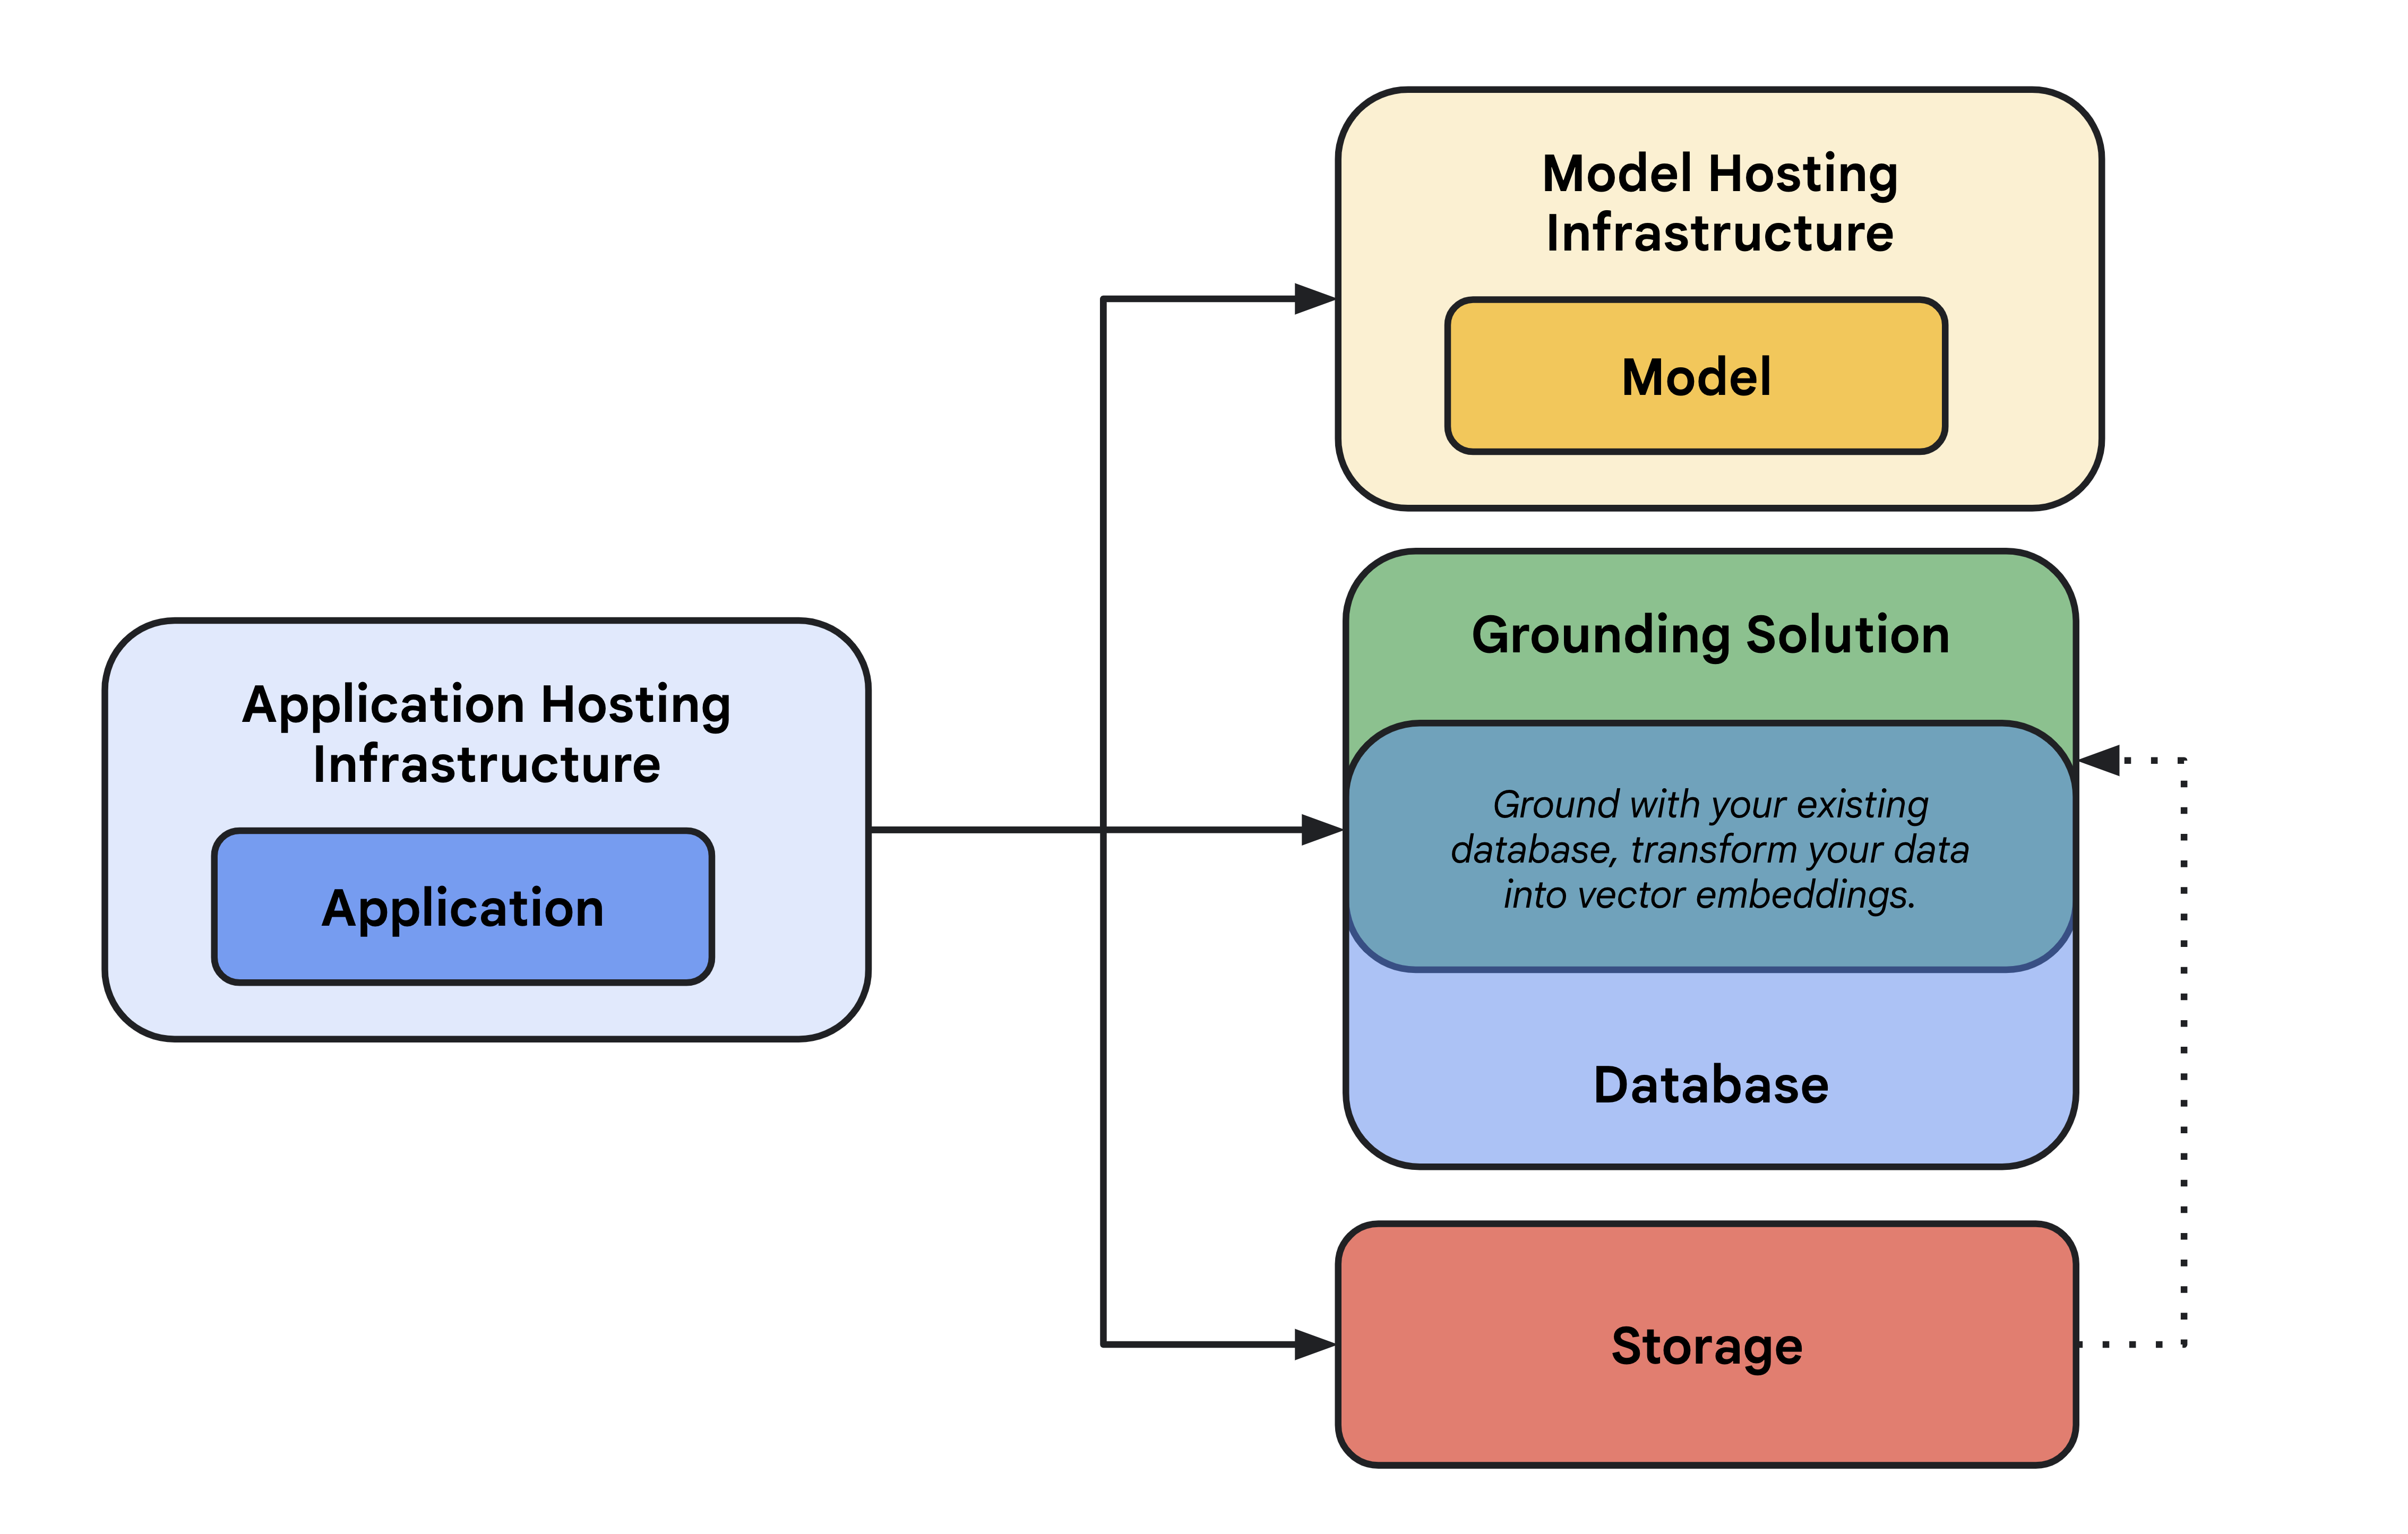 Diagrama que muestra una descripción general de alto nivel de una infraestructura de hosting de aplicaciones de IA generativa, incluido un modelo y su infraestructura de hosting de modelos, solución de fundamentación, base de datos, almacenamiento y hosting de aplicaciones.